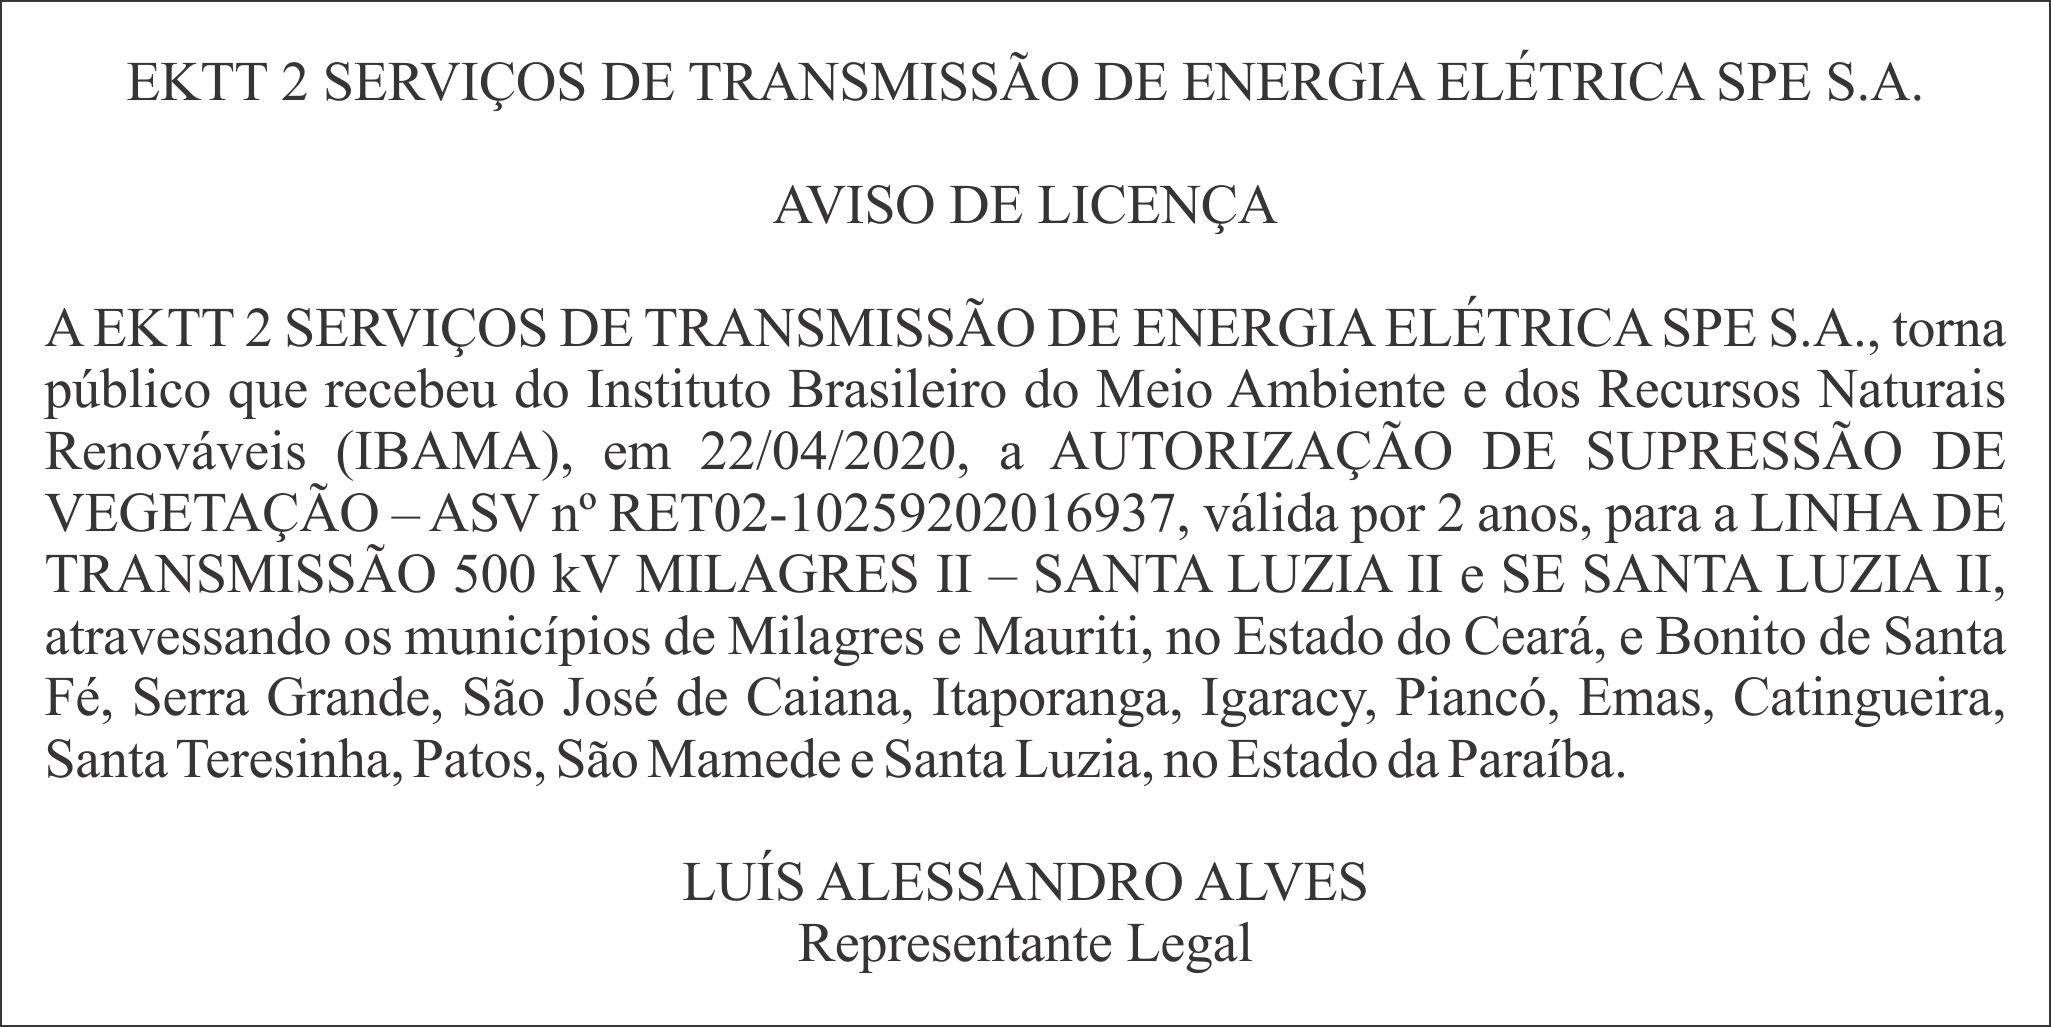 EKTT 2 SERVIÇOS DE TRANSMISSÃO DE ENERGIA ELÉTRICA SPE S.A. – AVISO DE LICENÇA